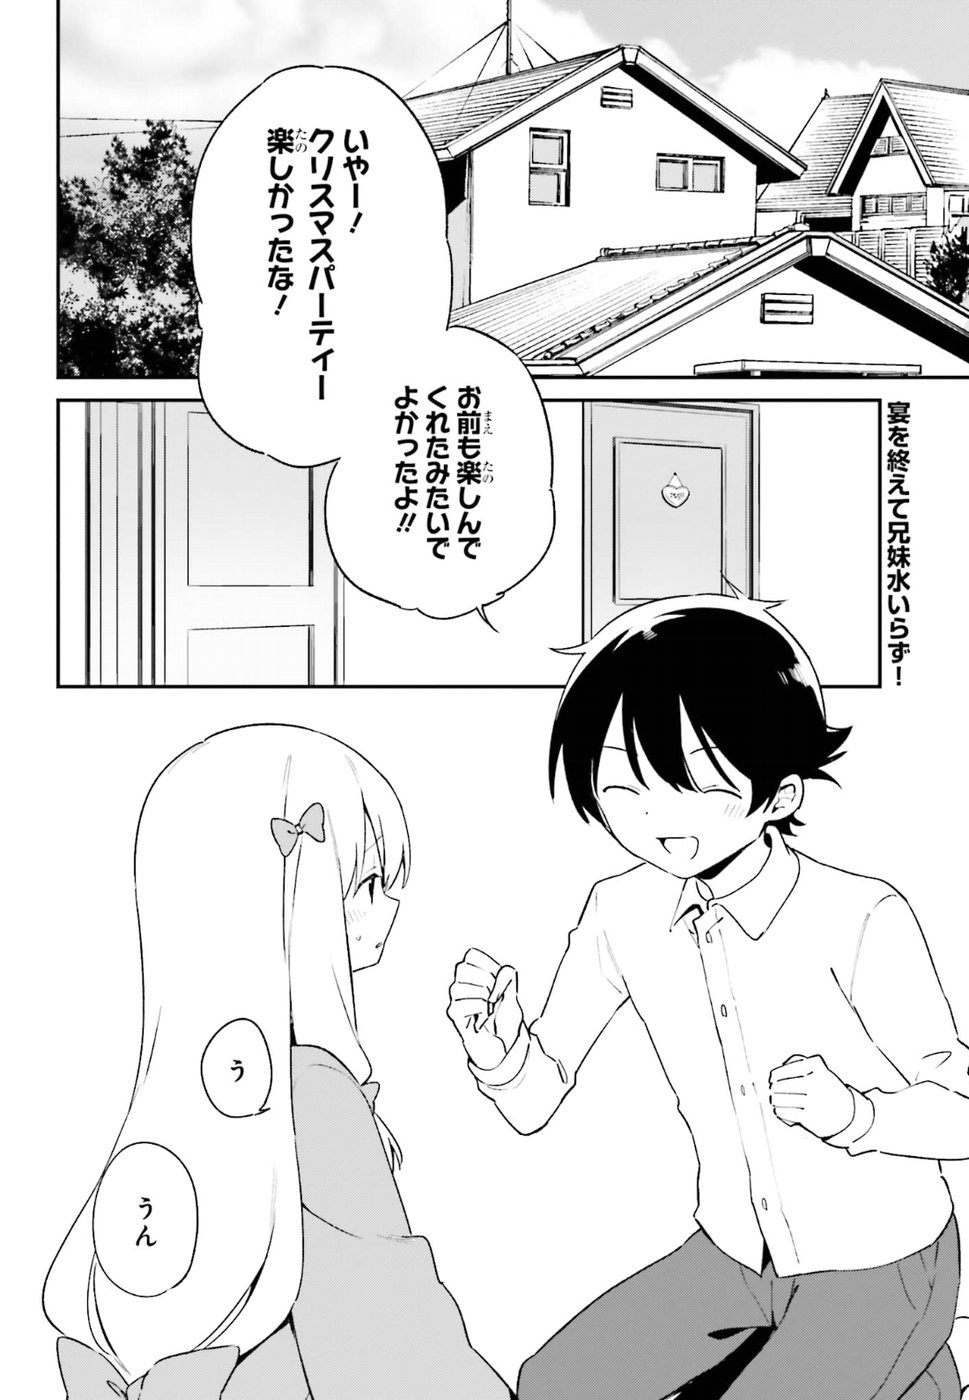 Ero Manga Sensei - Chapter 54 - Page 2